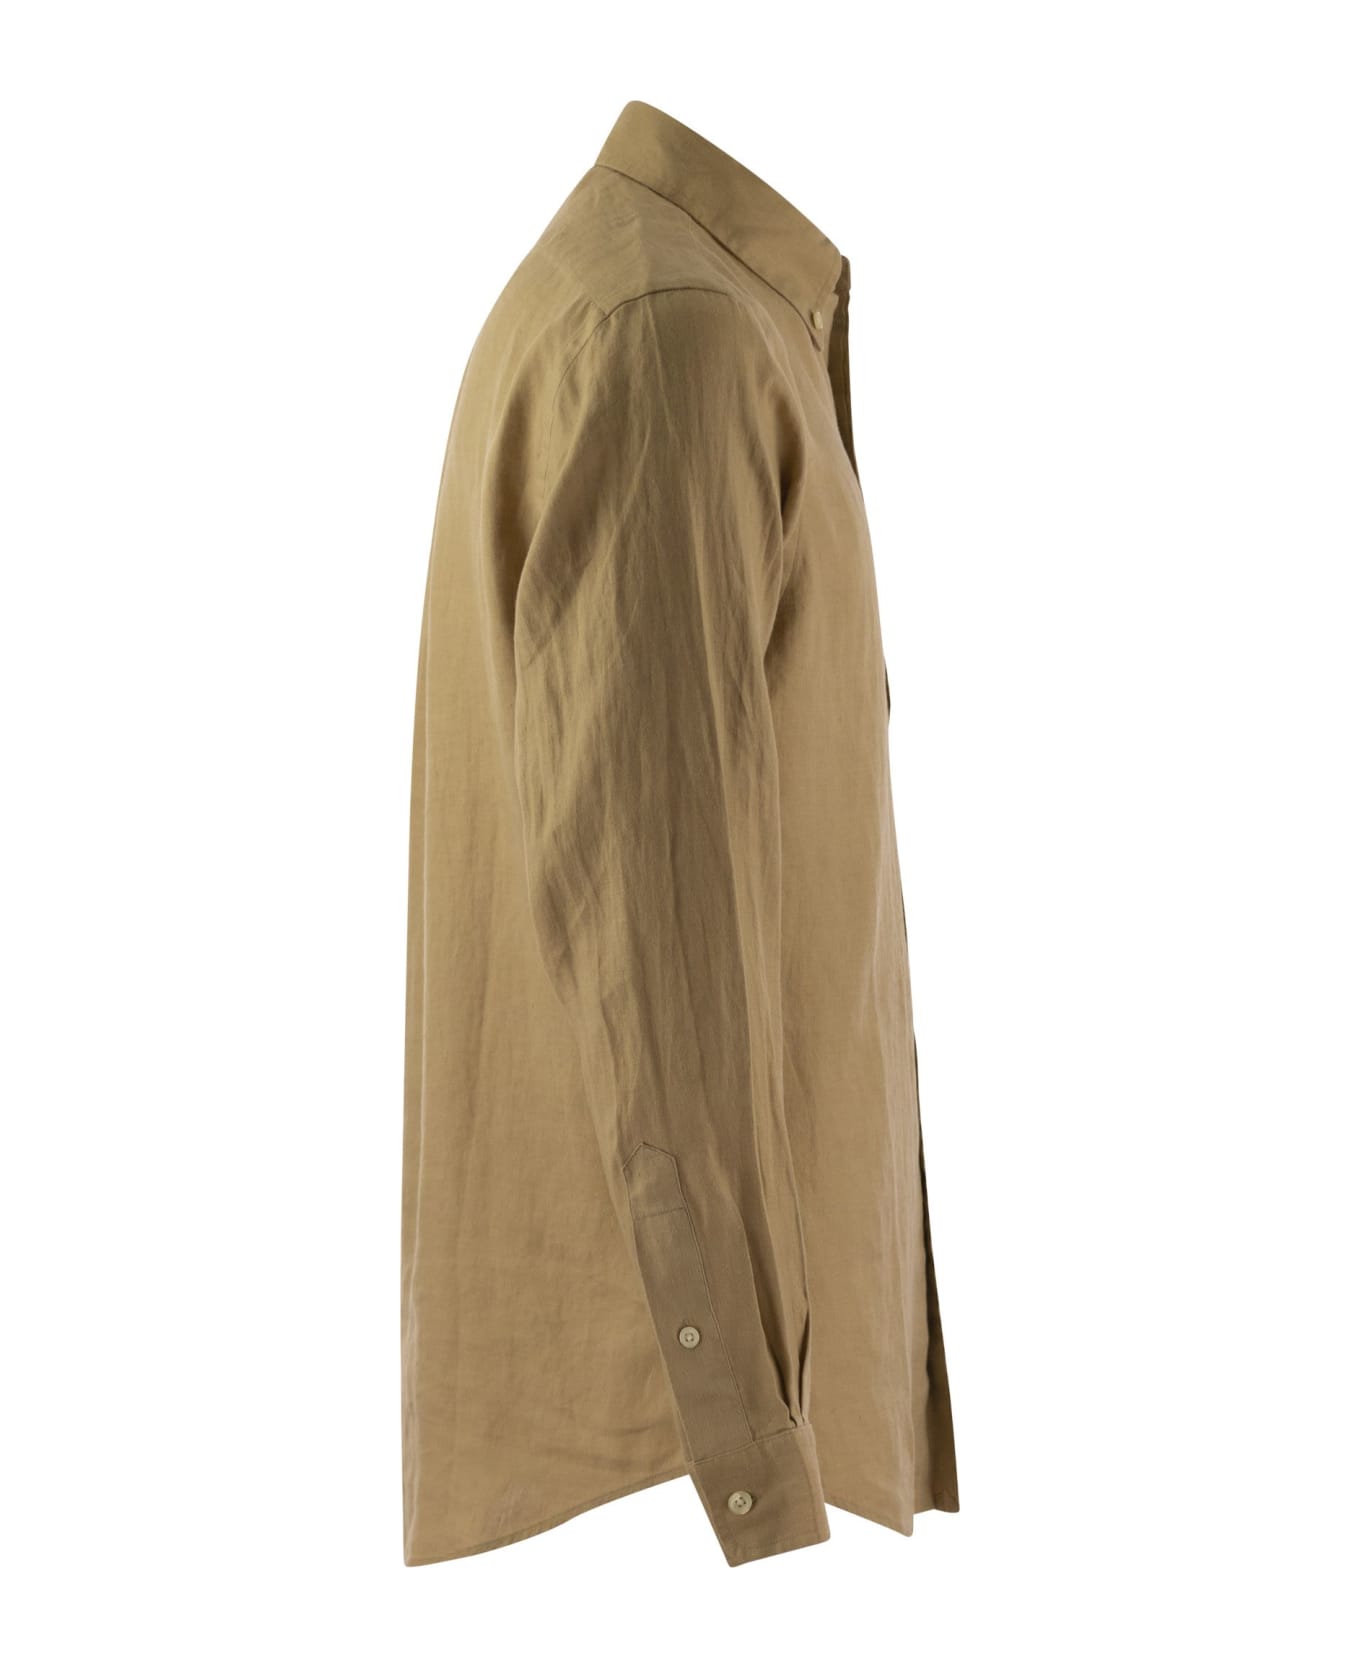 Ralph Lauren Custom-fit Linen Shirt - Beige/Khaki